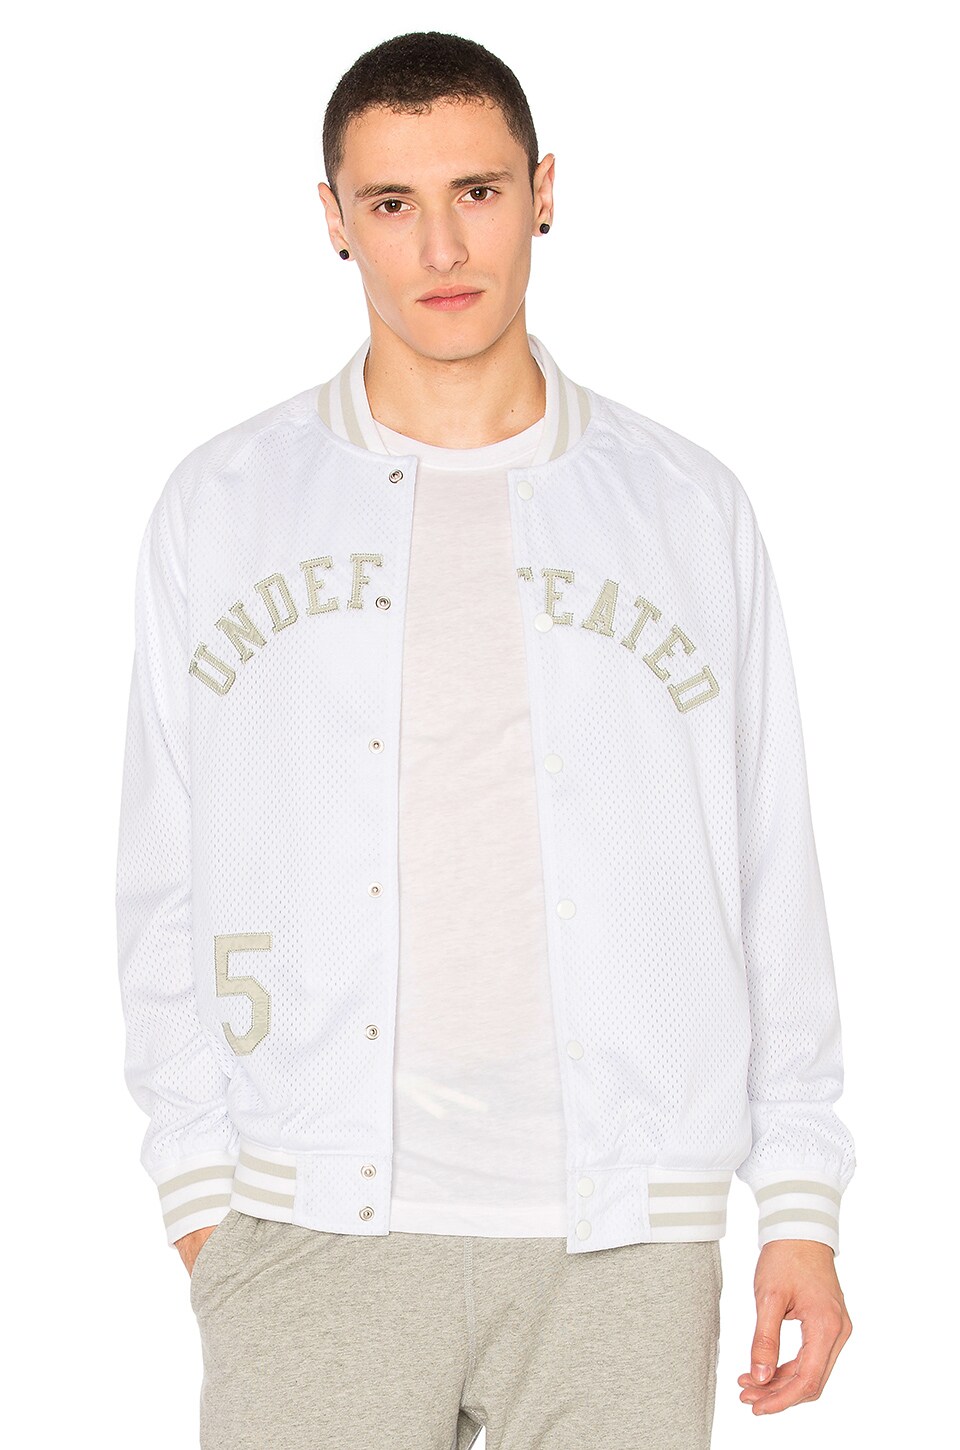 Undefeated Mesh Varsity Jacket in White | REVOLVE